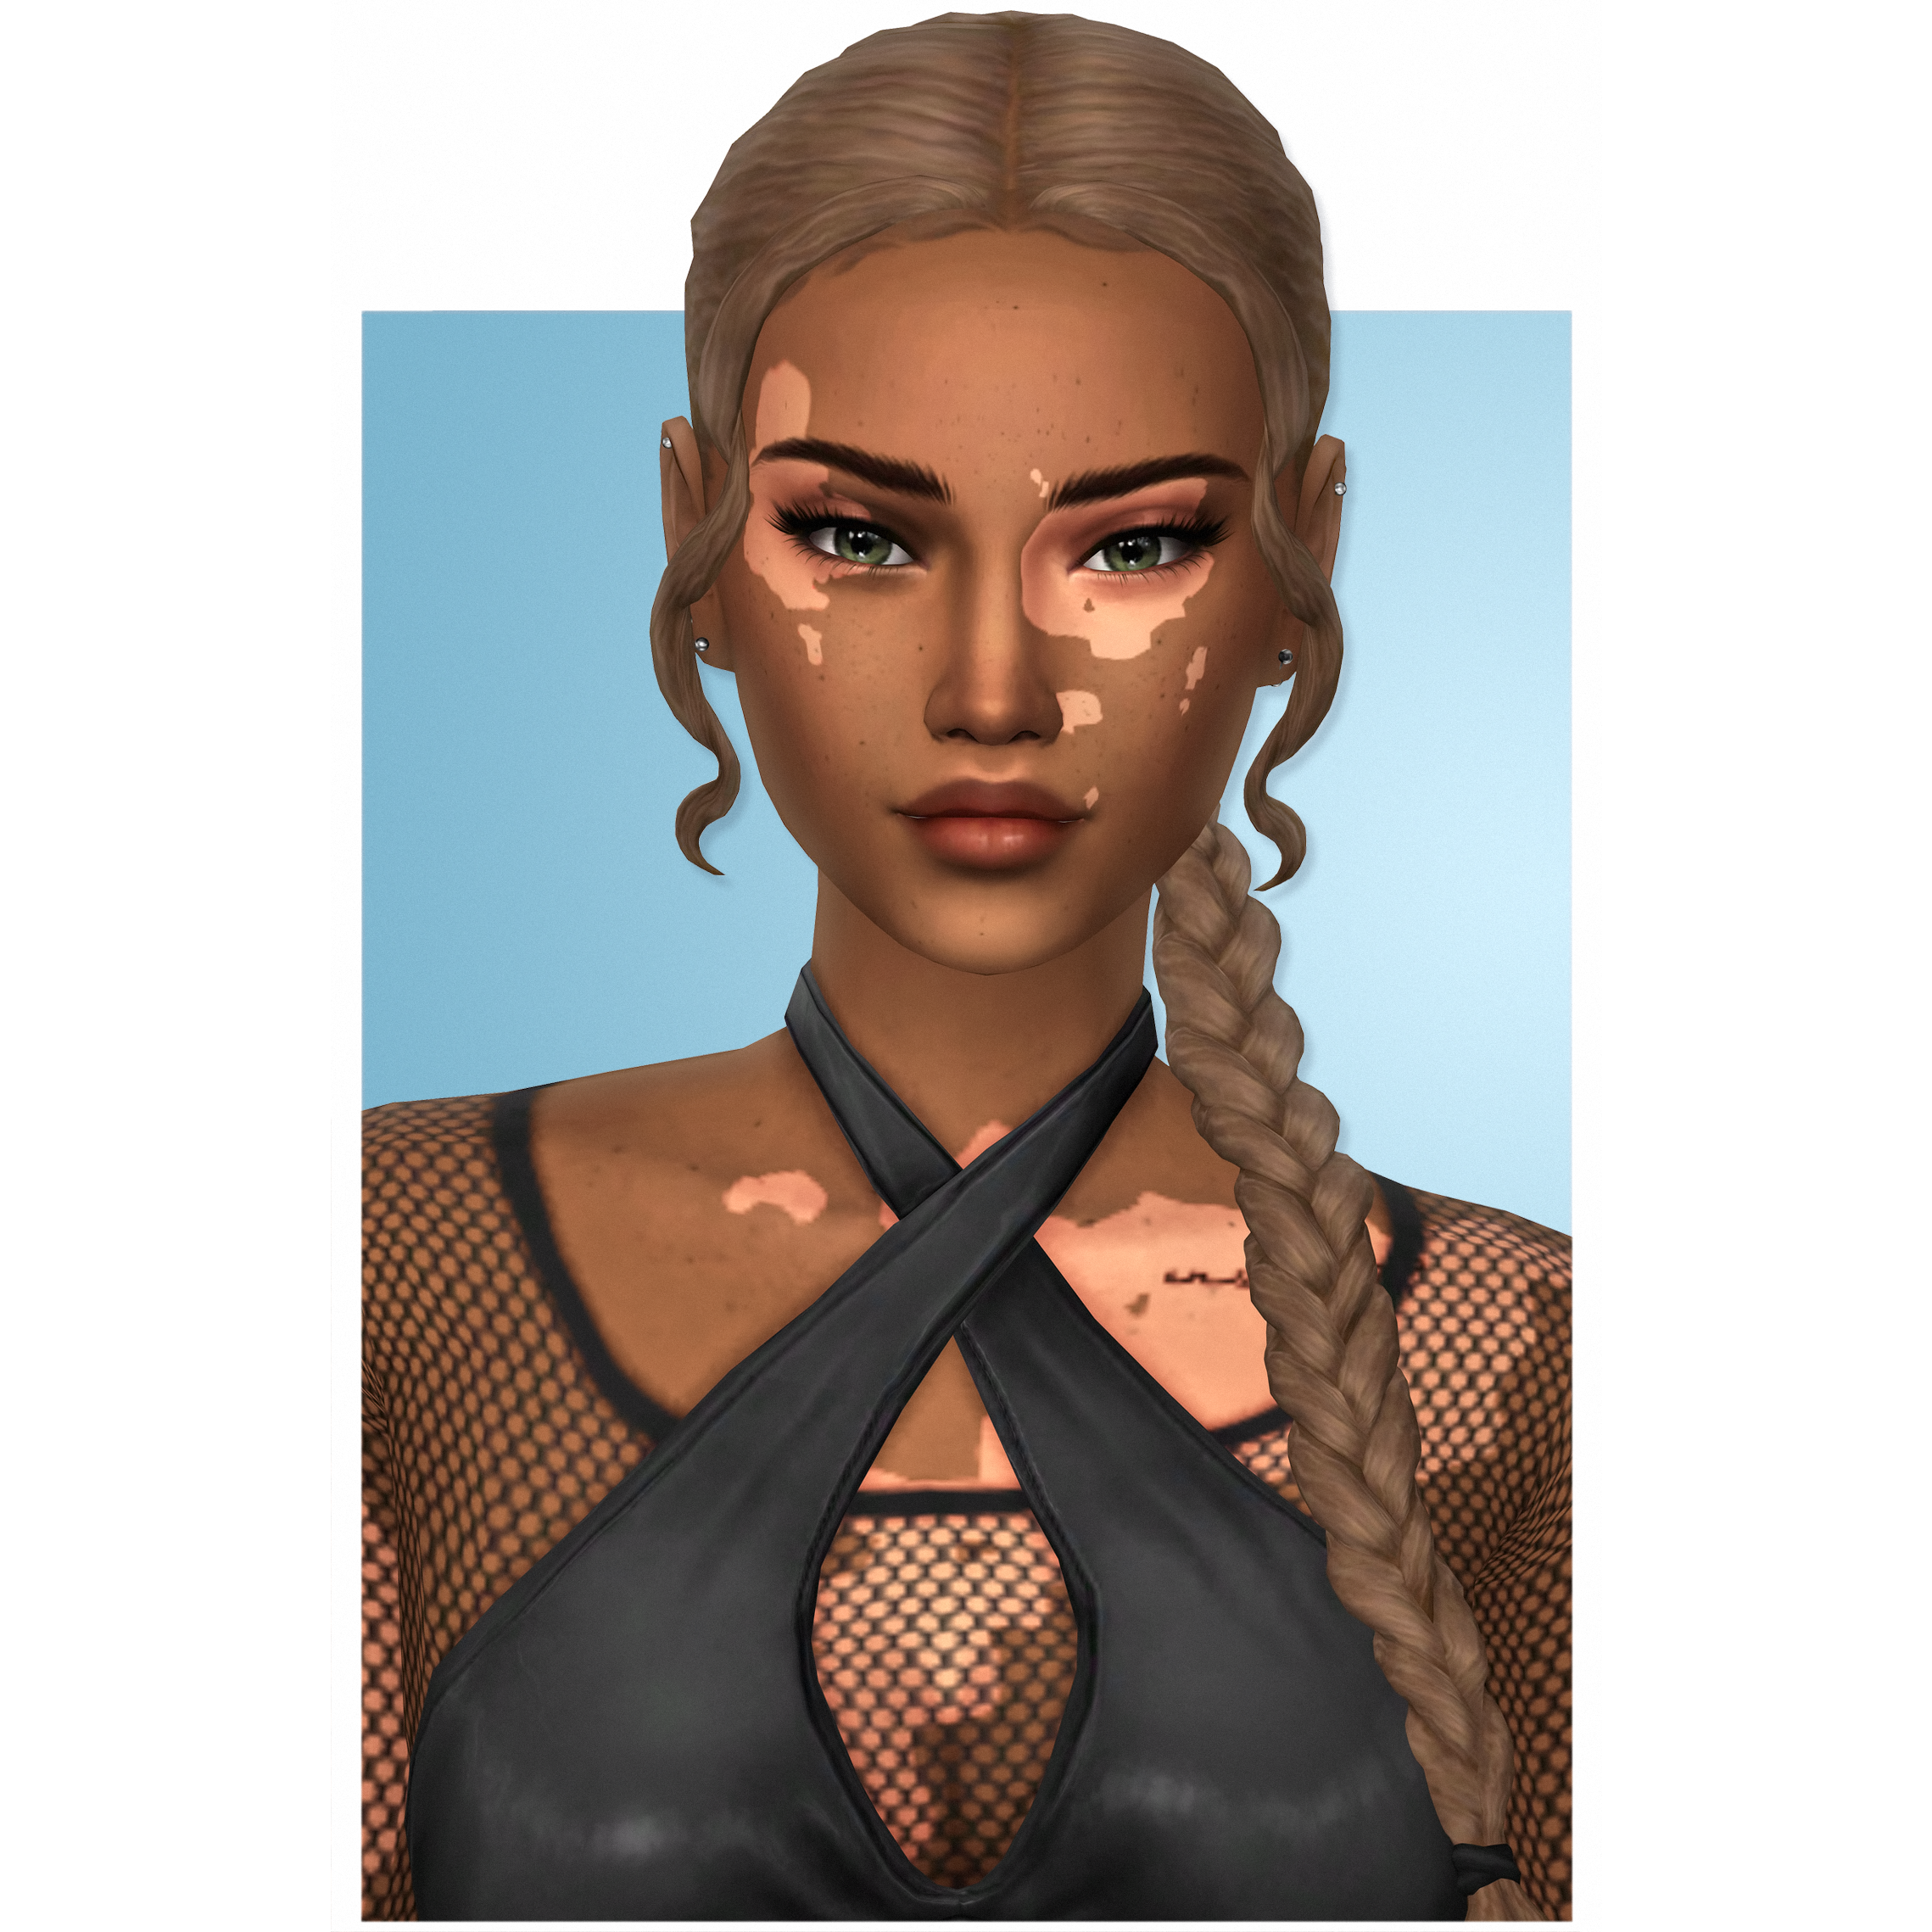 AxA Angel - The Sims 4 Create a Sim - CurseForge